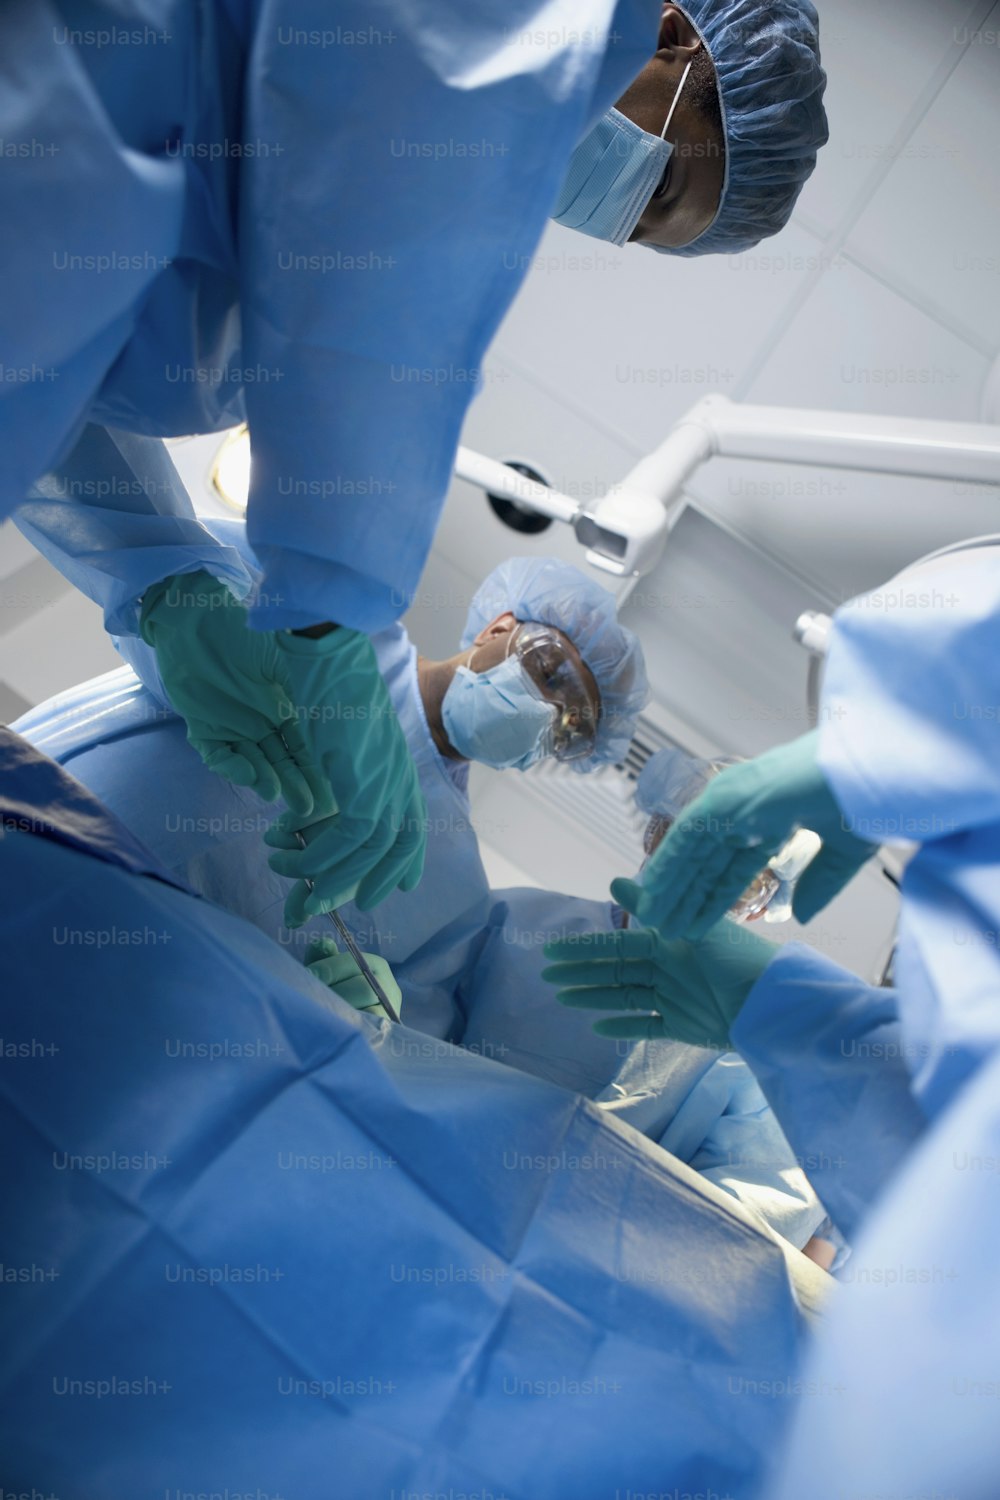 un groupe de chirurgiens effectuant une intervention chirurgicale sur un patient